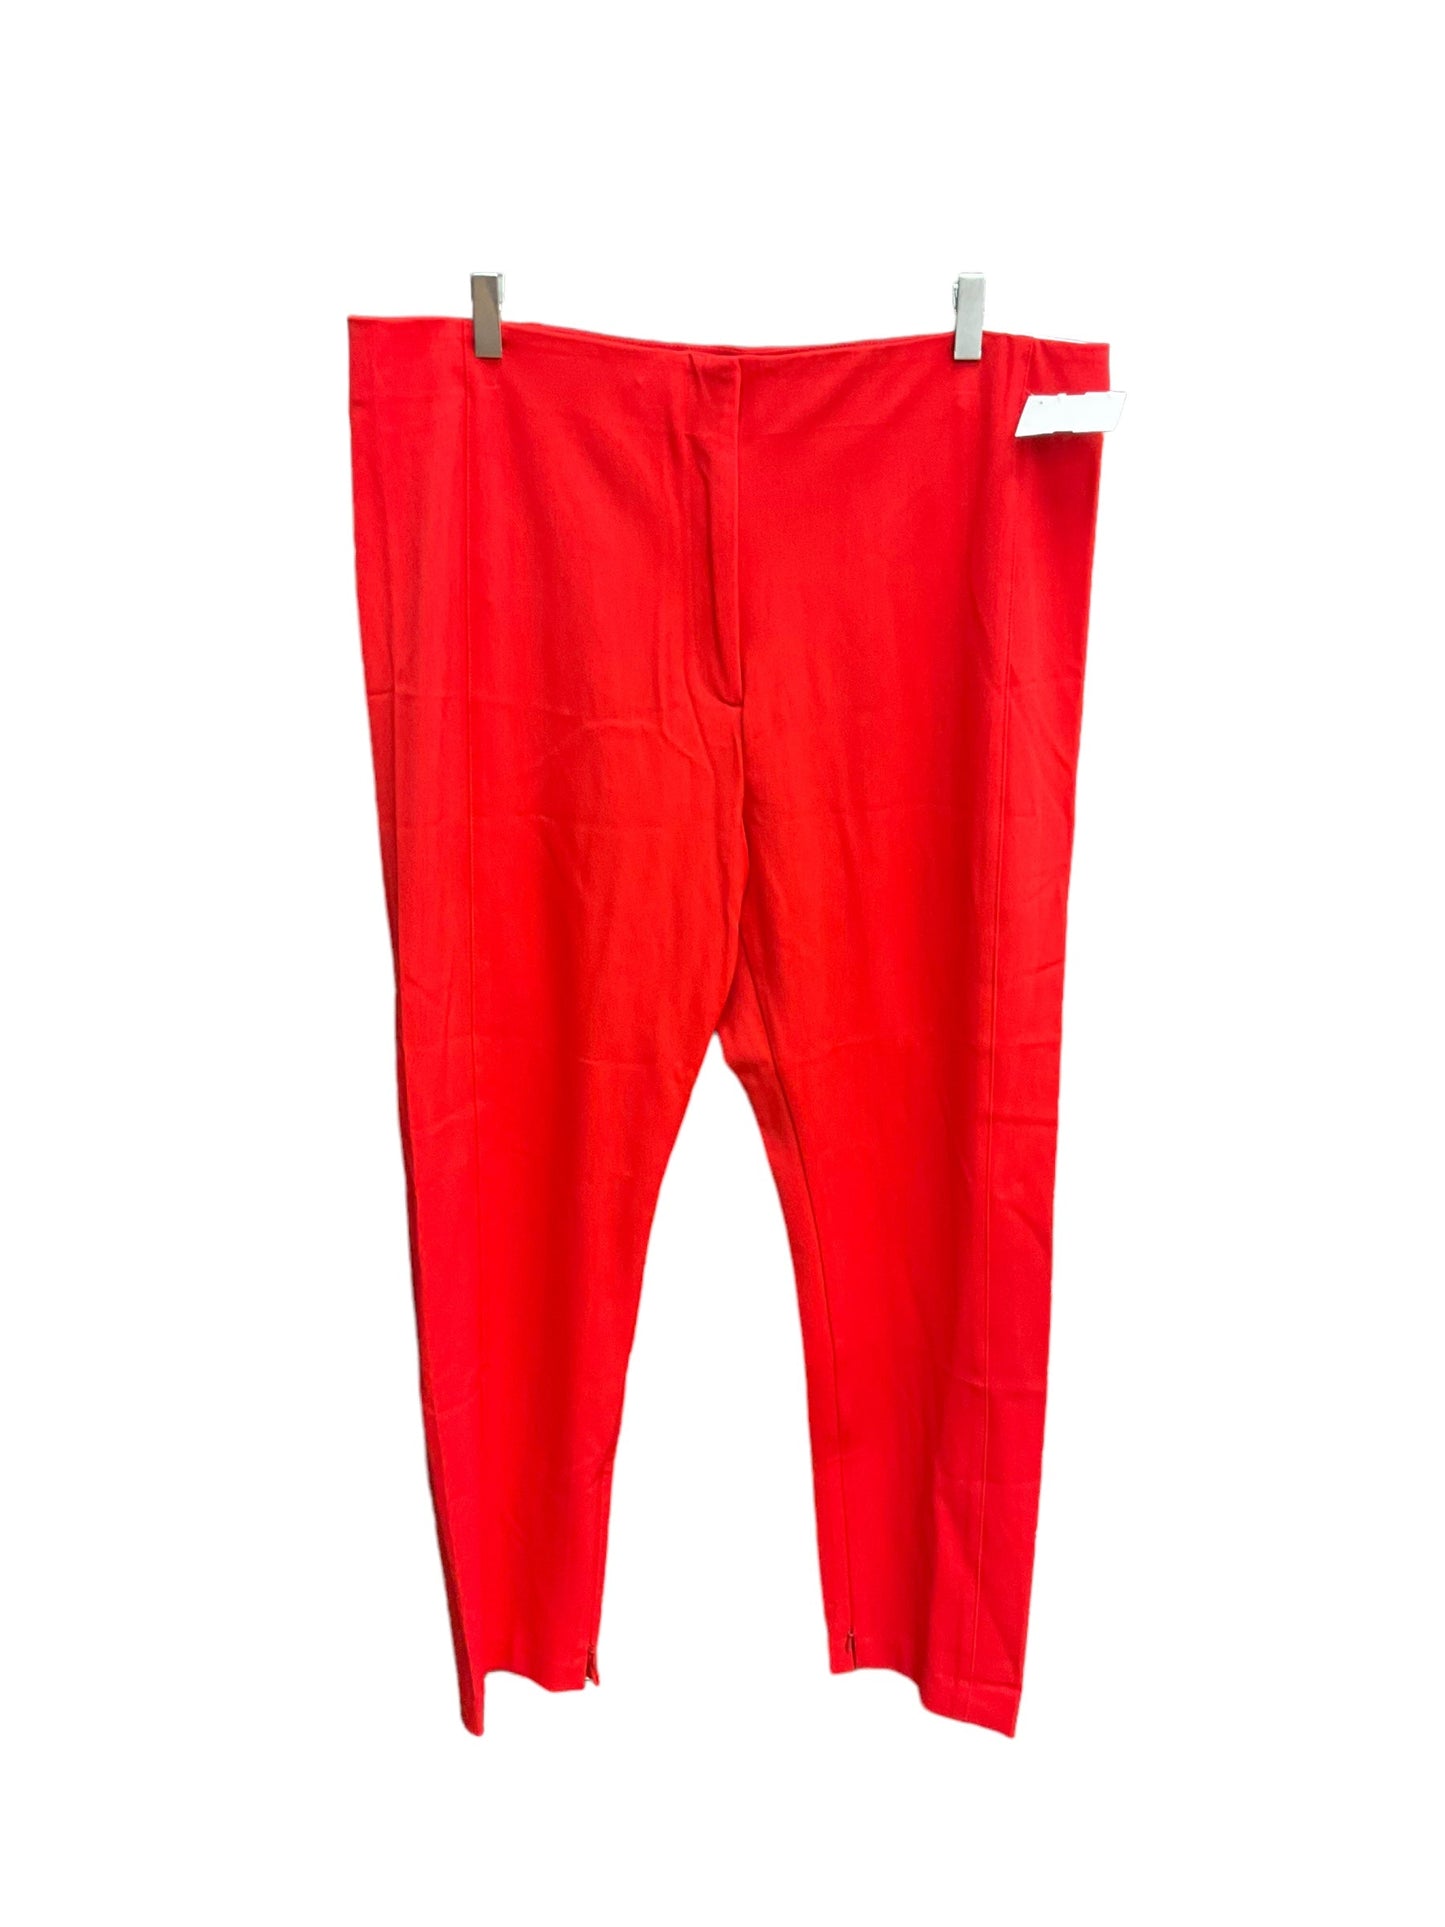 Red Pants Dress Ann Taylor, Size 16